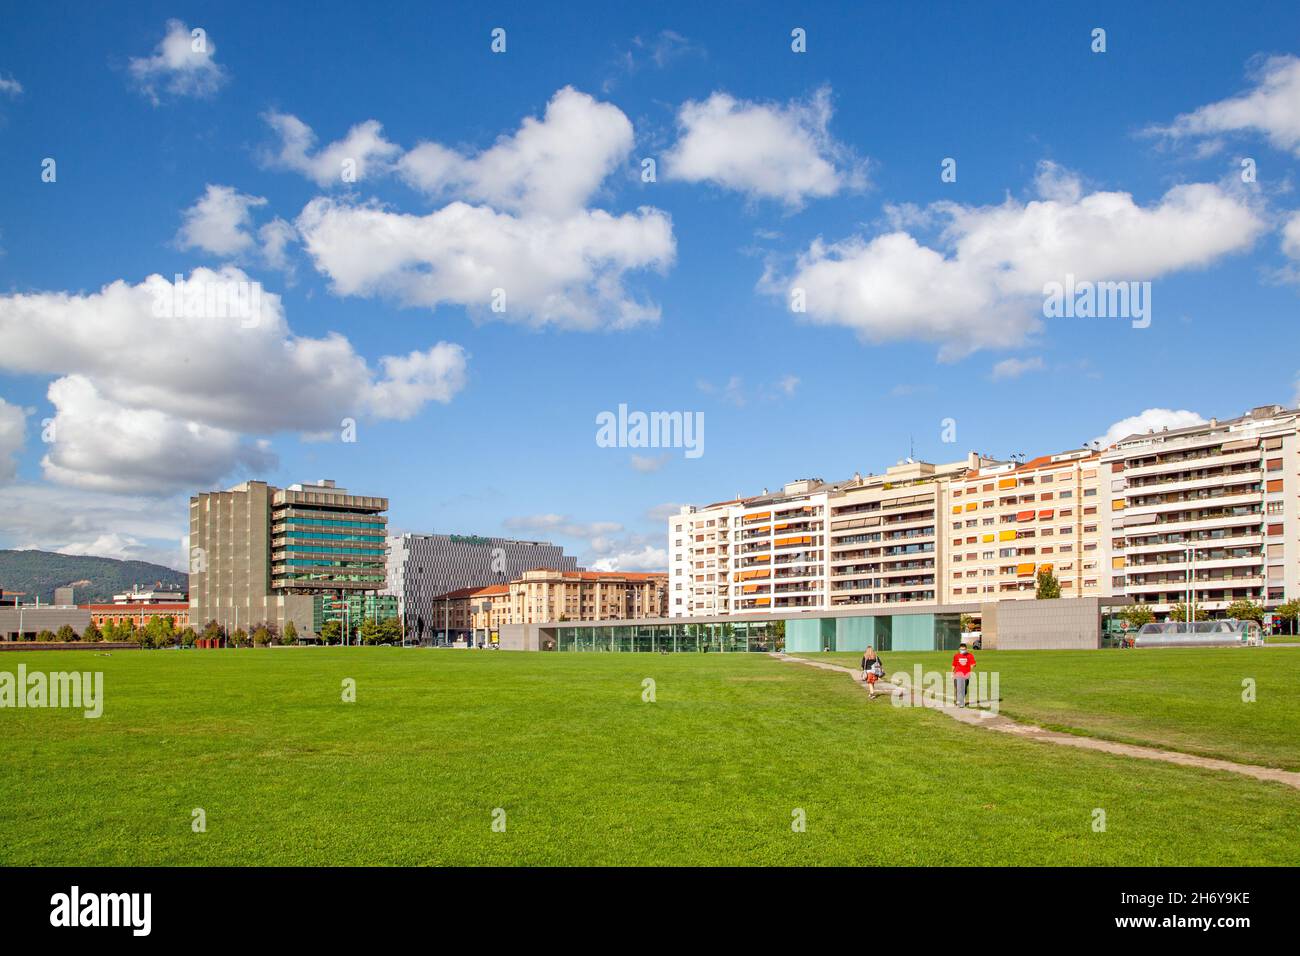 Moderne Apartments hinter der Grünfläche Ciudadela de Pamplona in der spanischen Stadt Pamplona Navarra im Norden Spaniens Stockfoto